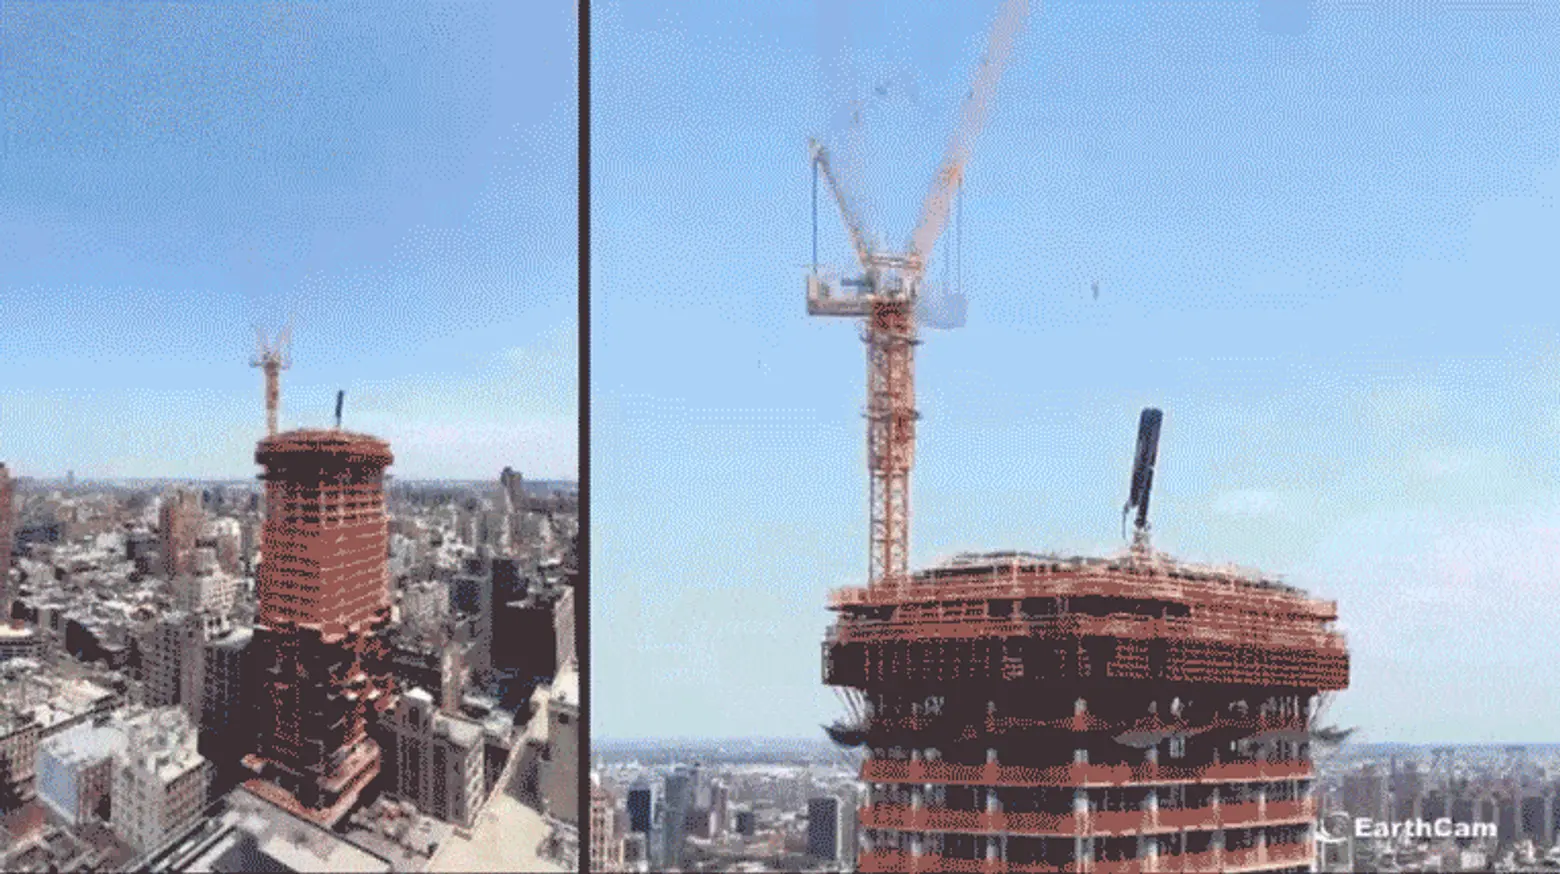 Watch Herzog & de Meuron’s ‘Jenga Tower’ rise in 60 seconds